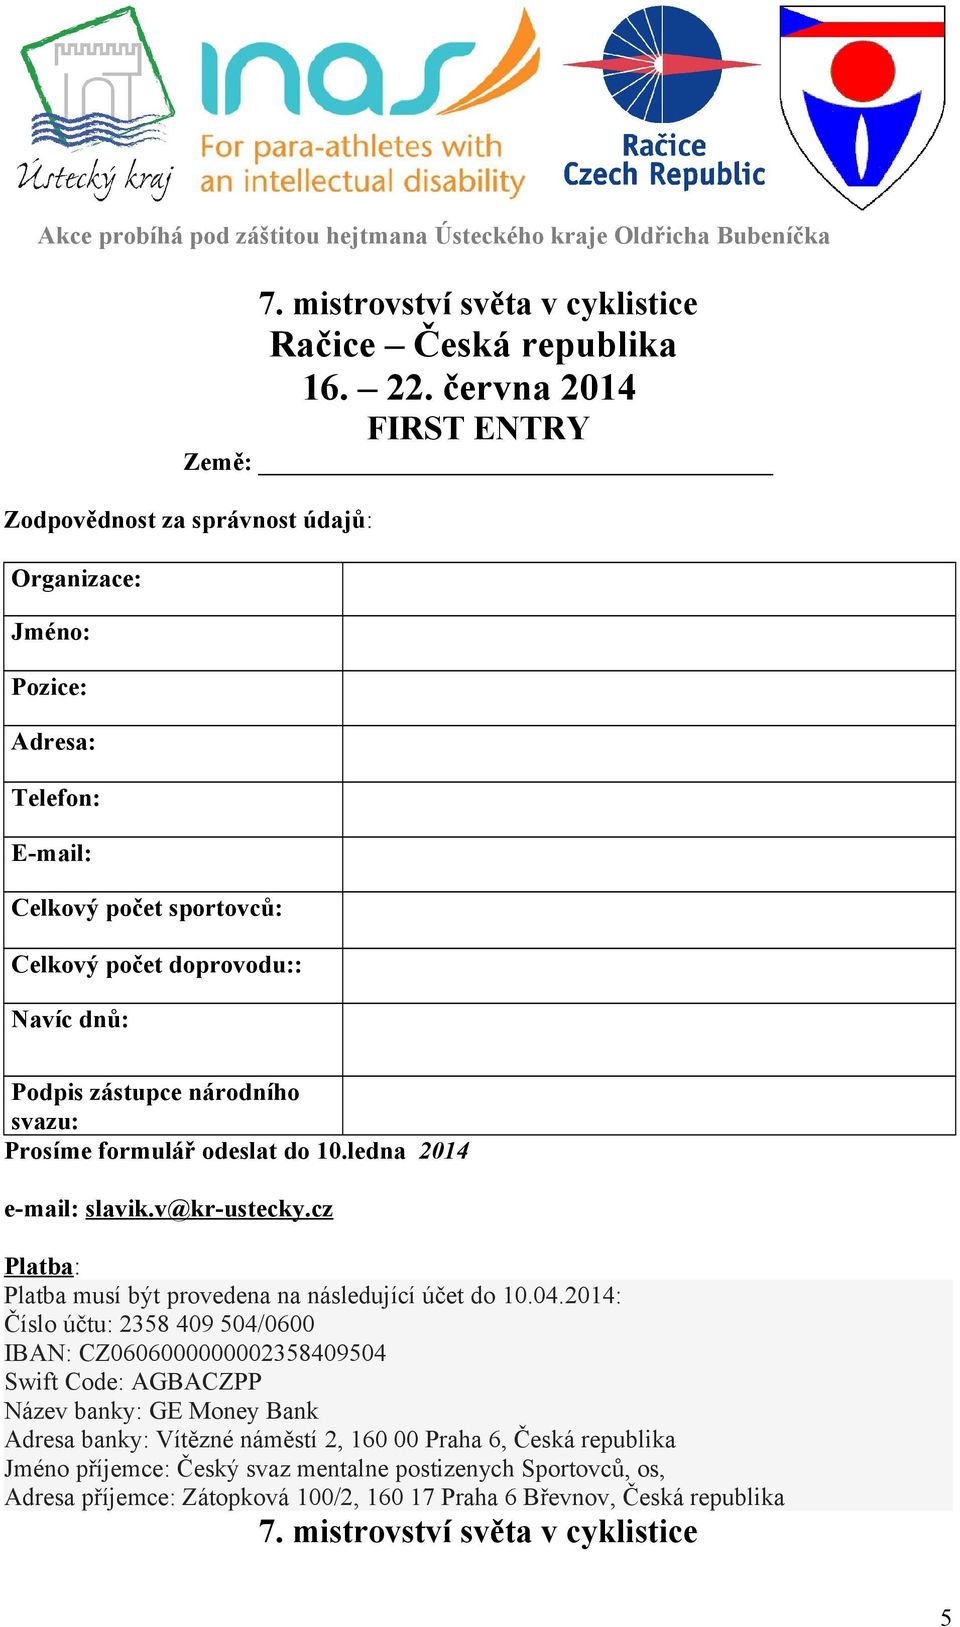 zástupce národního svazu: Prosíme formulář odeslat do 10.ledna 2014 e-mail: slavik.v@kr-ustecky.cz Platba: Platba musí být provedena na následující účet do 10.04.